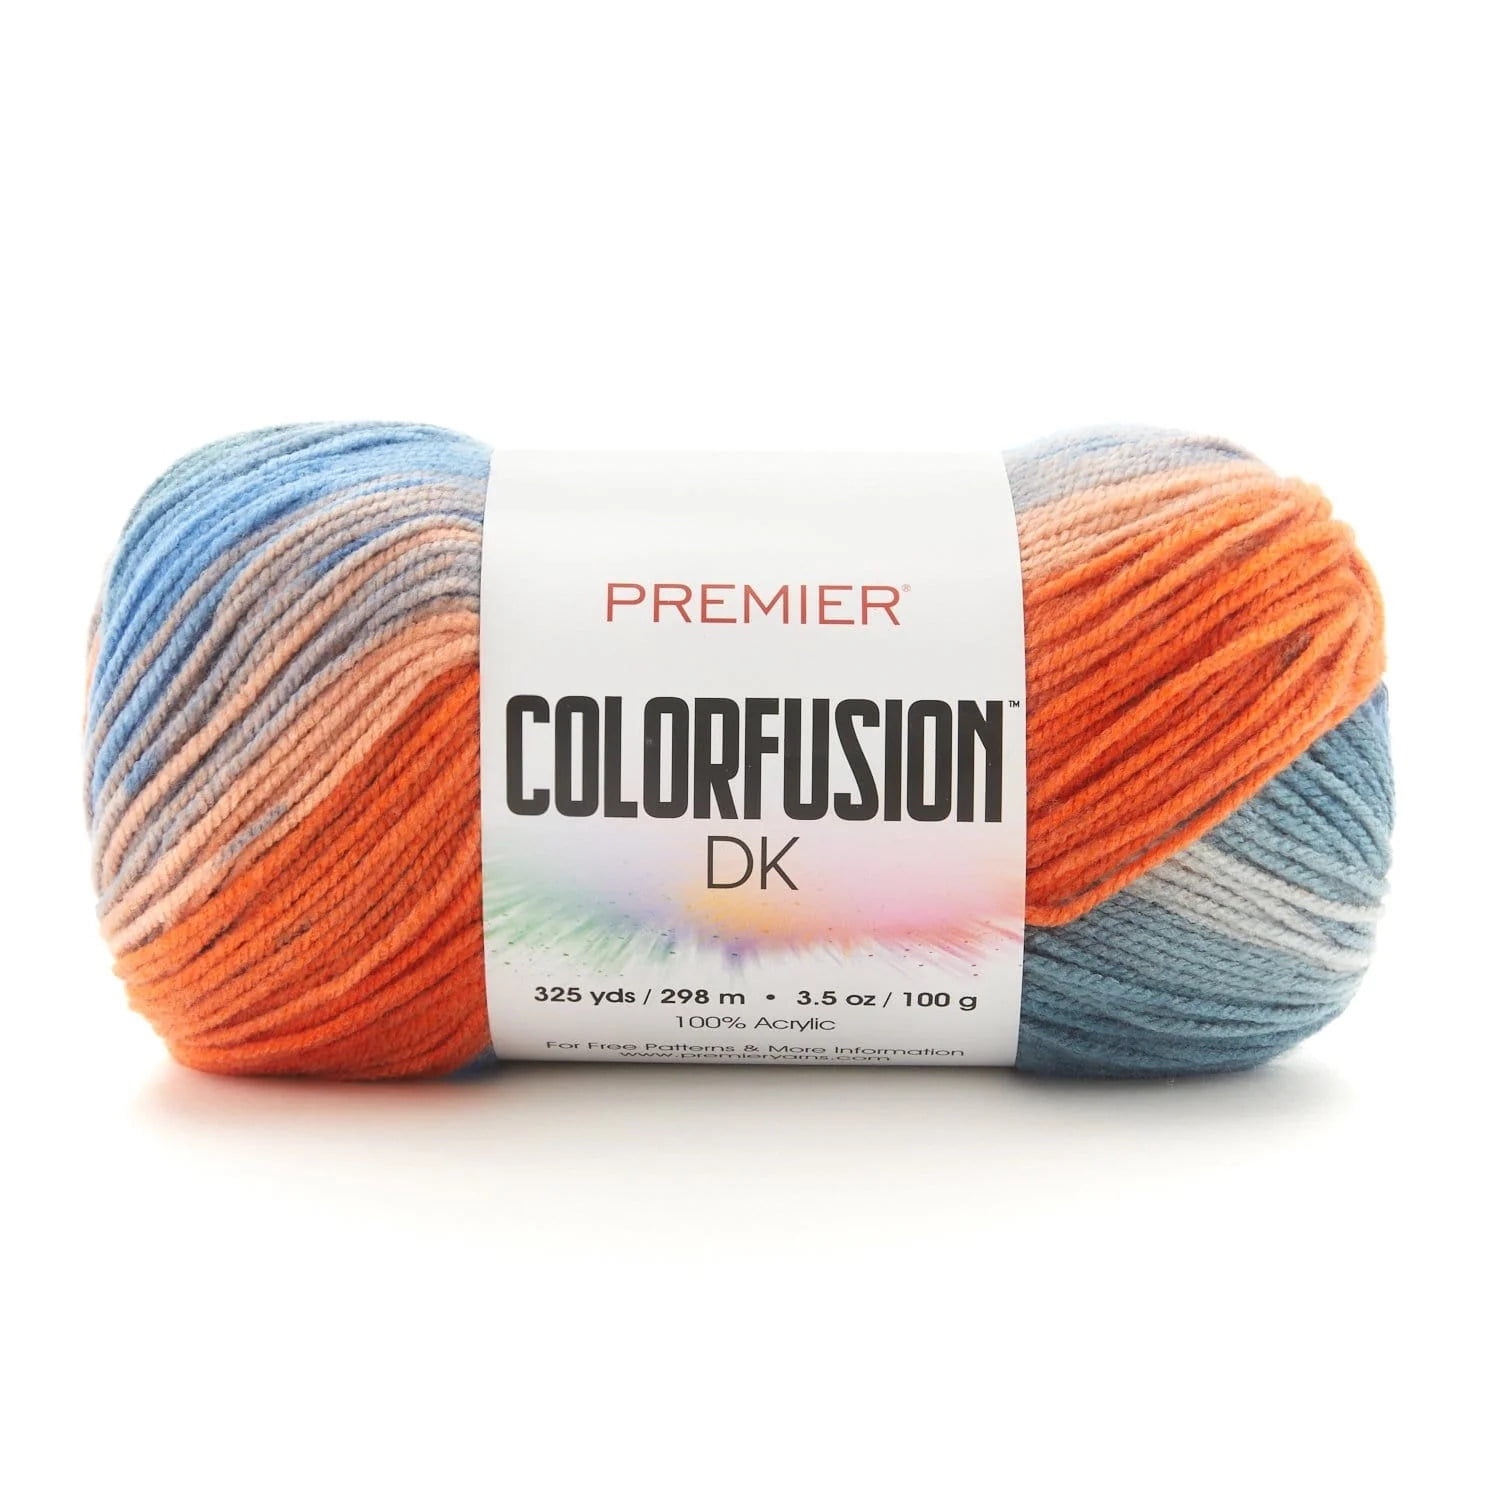 Premier Yarns Dk Colors Yarn : Target